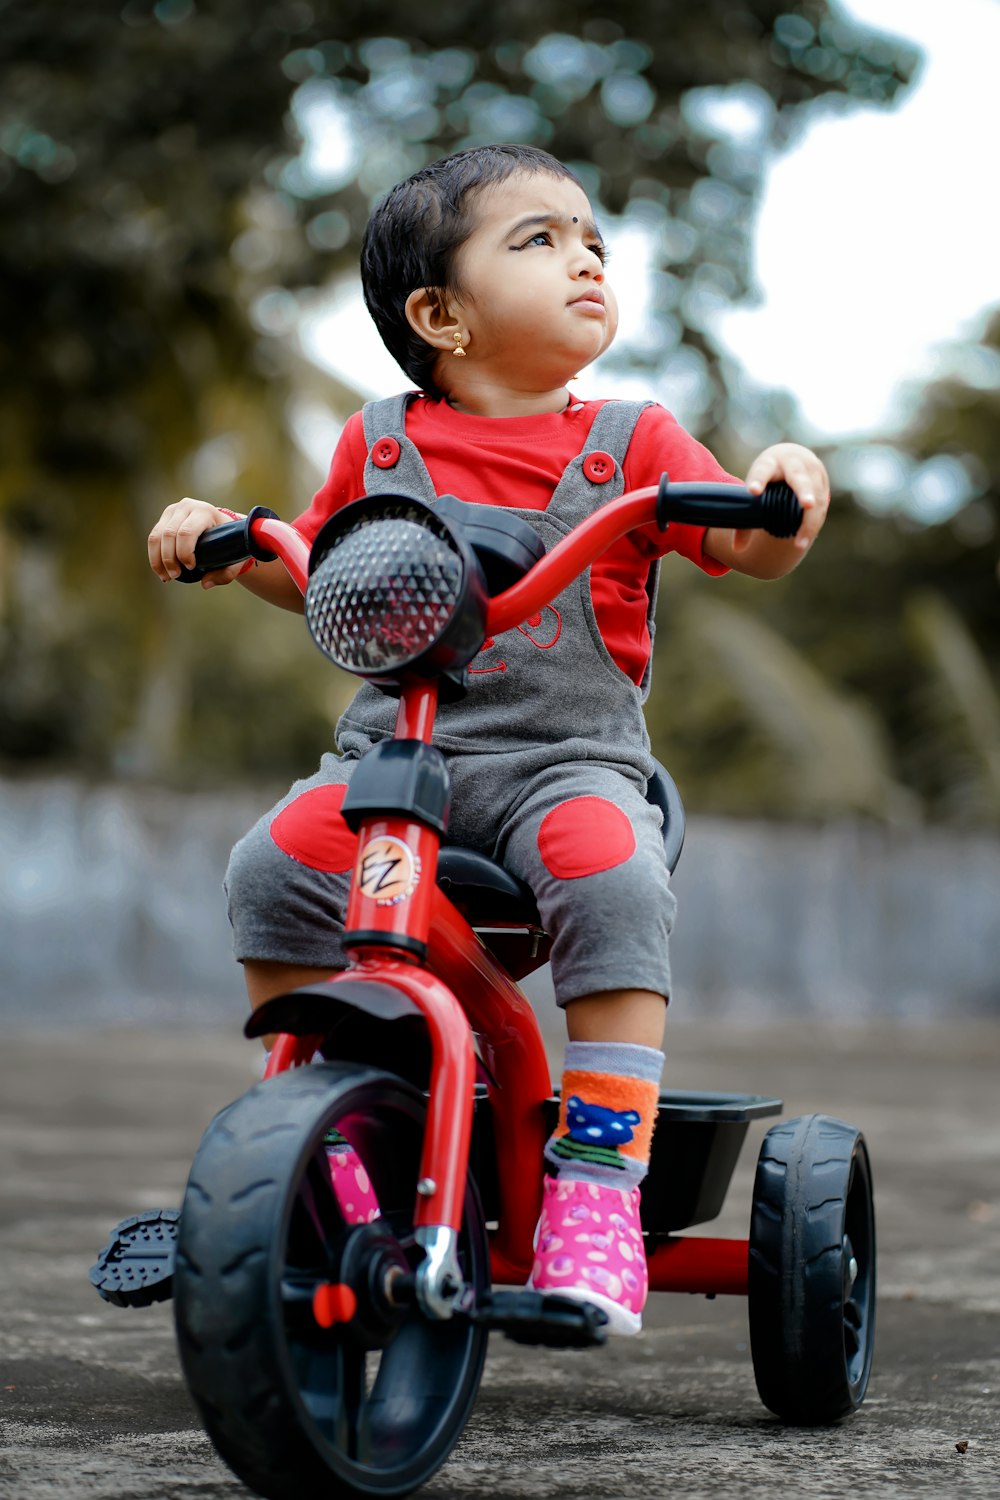 criança na camisa vermelha que monta o brinquedo da motocicleta vermelho e preto